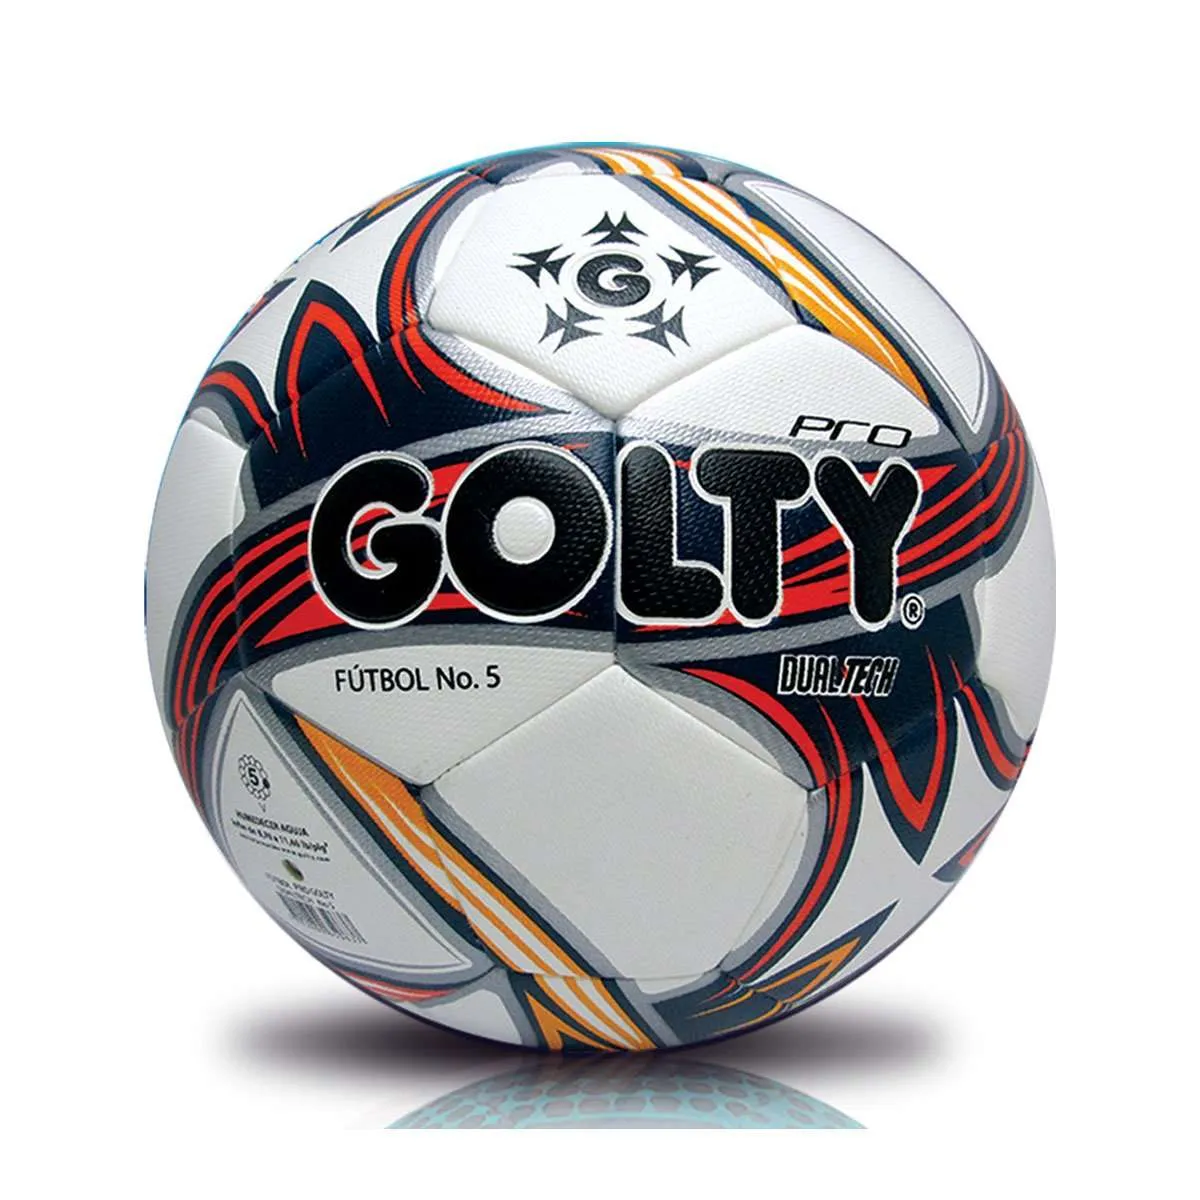 Balón Futbol Pro GOLTY Dualtech